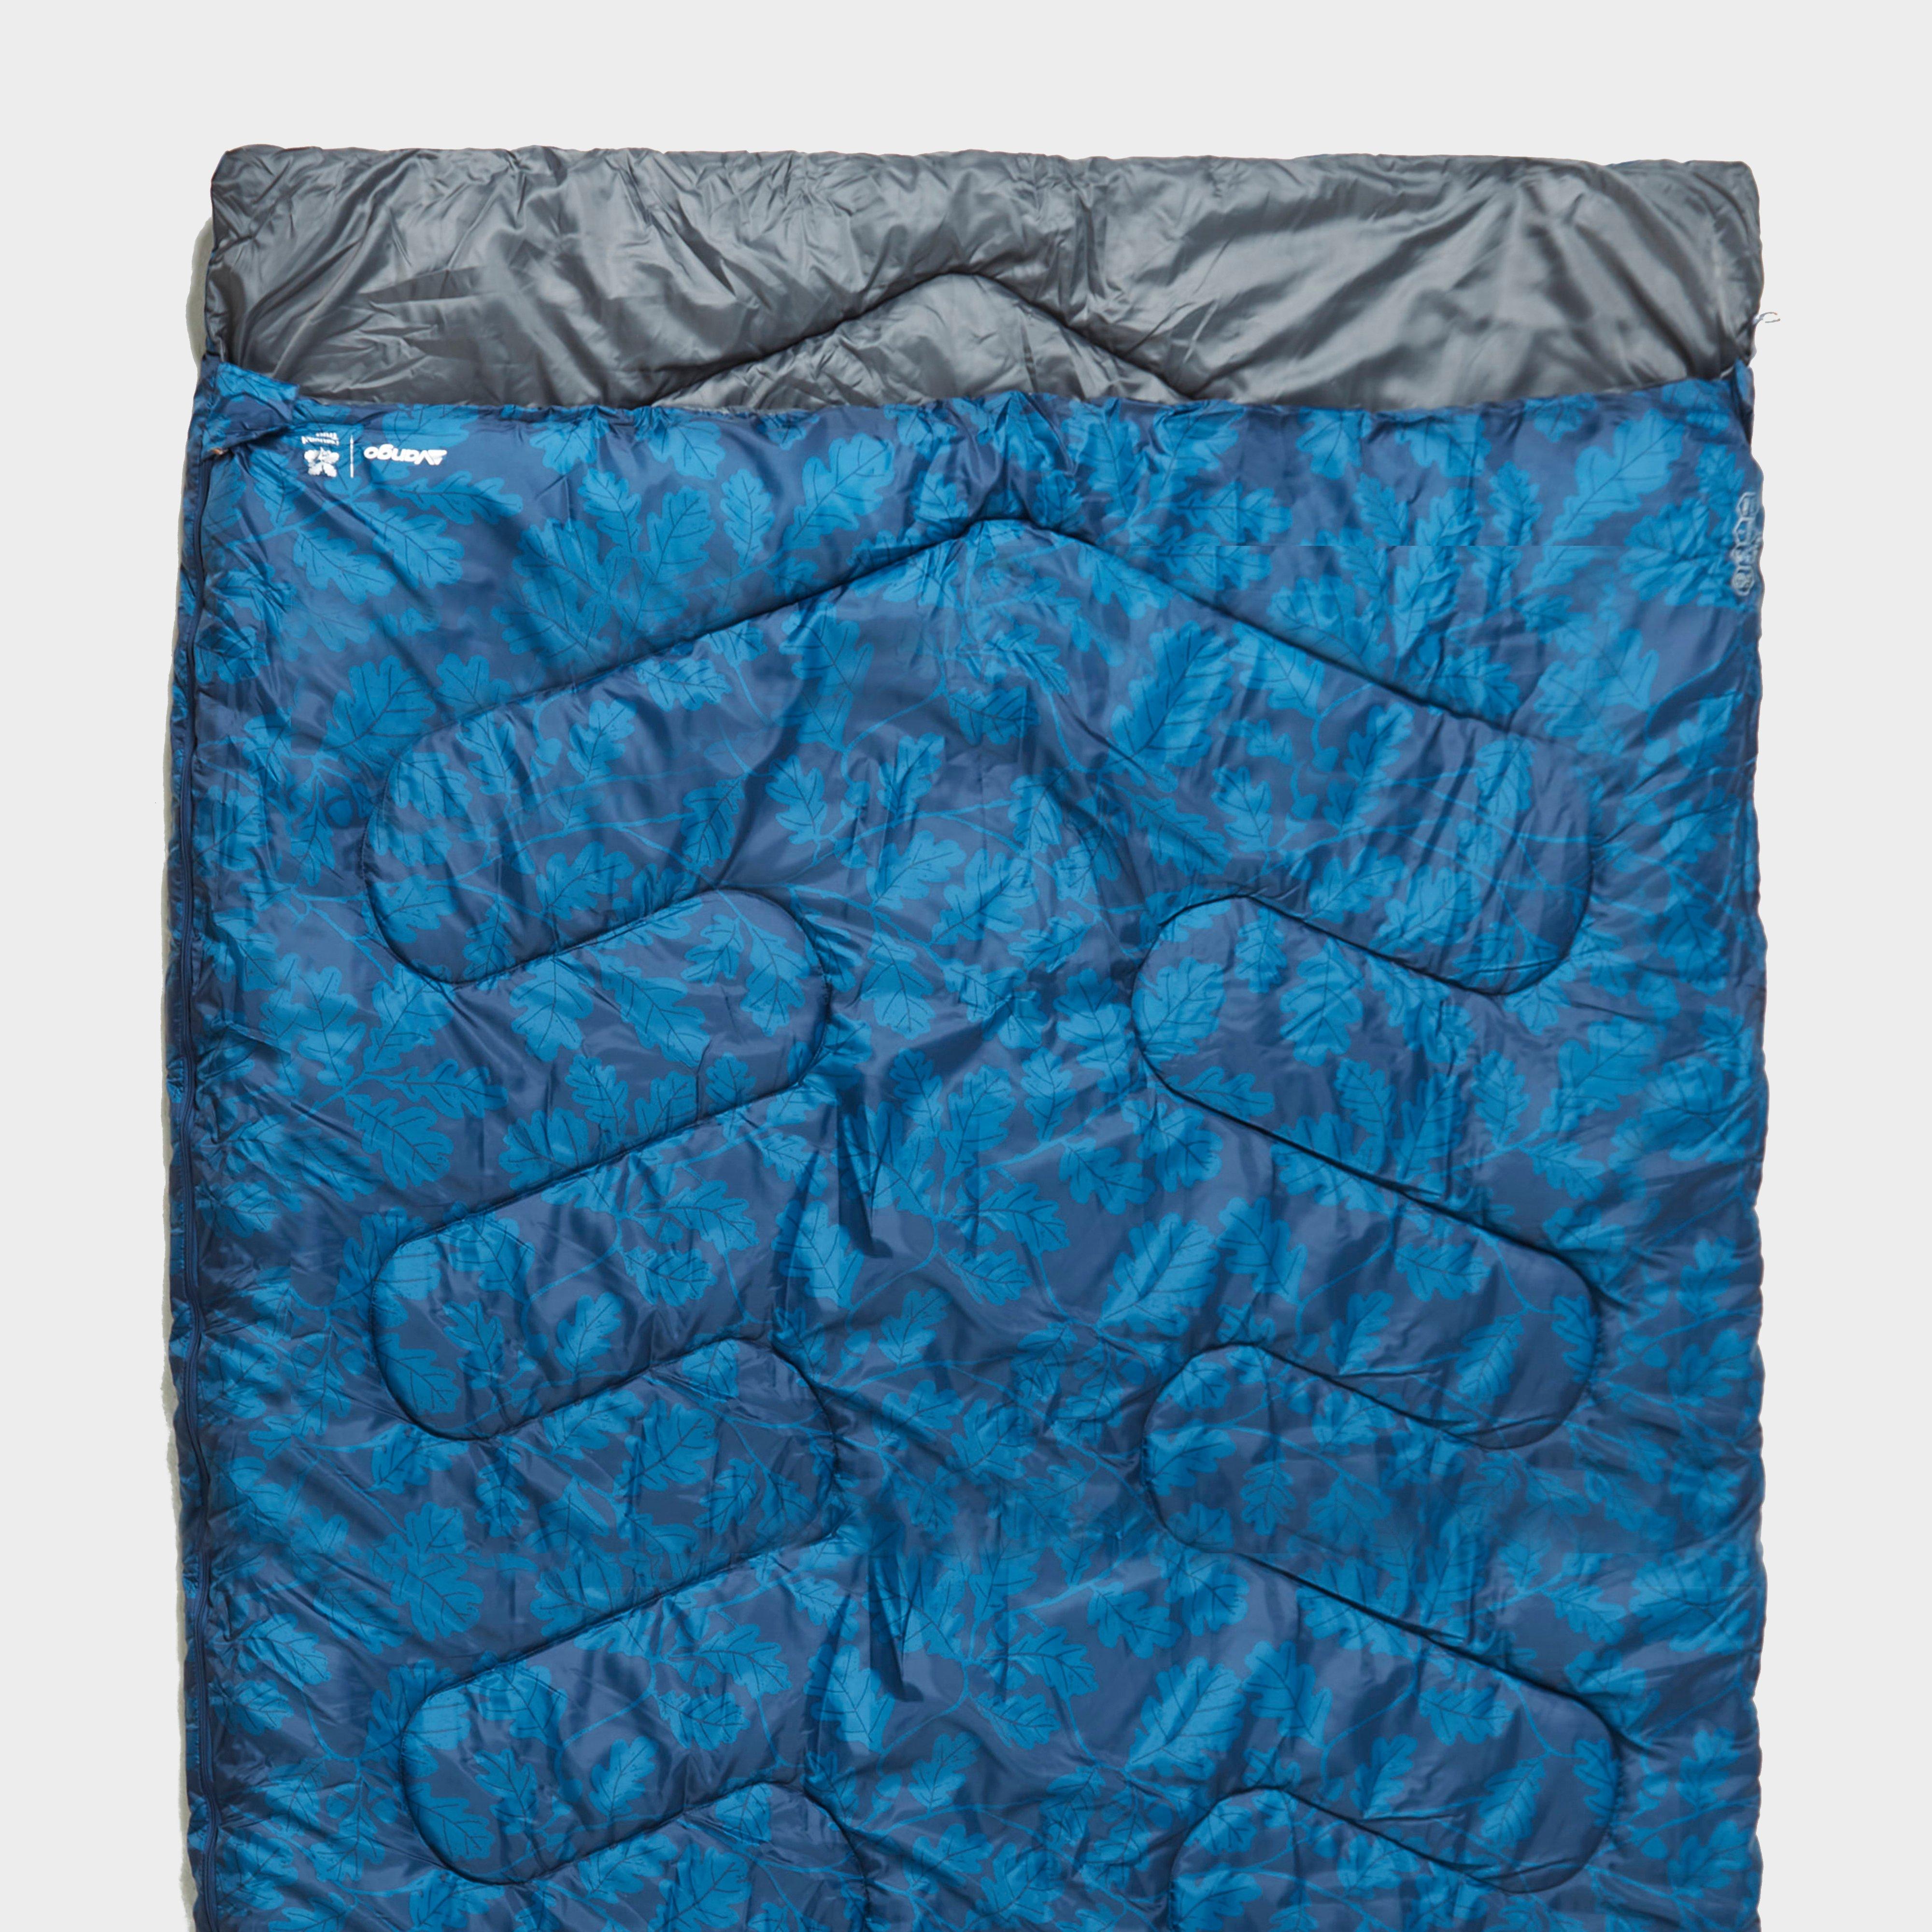  VANGO Gwent Double Sleeping Bag, Blue